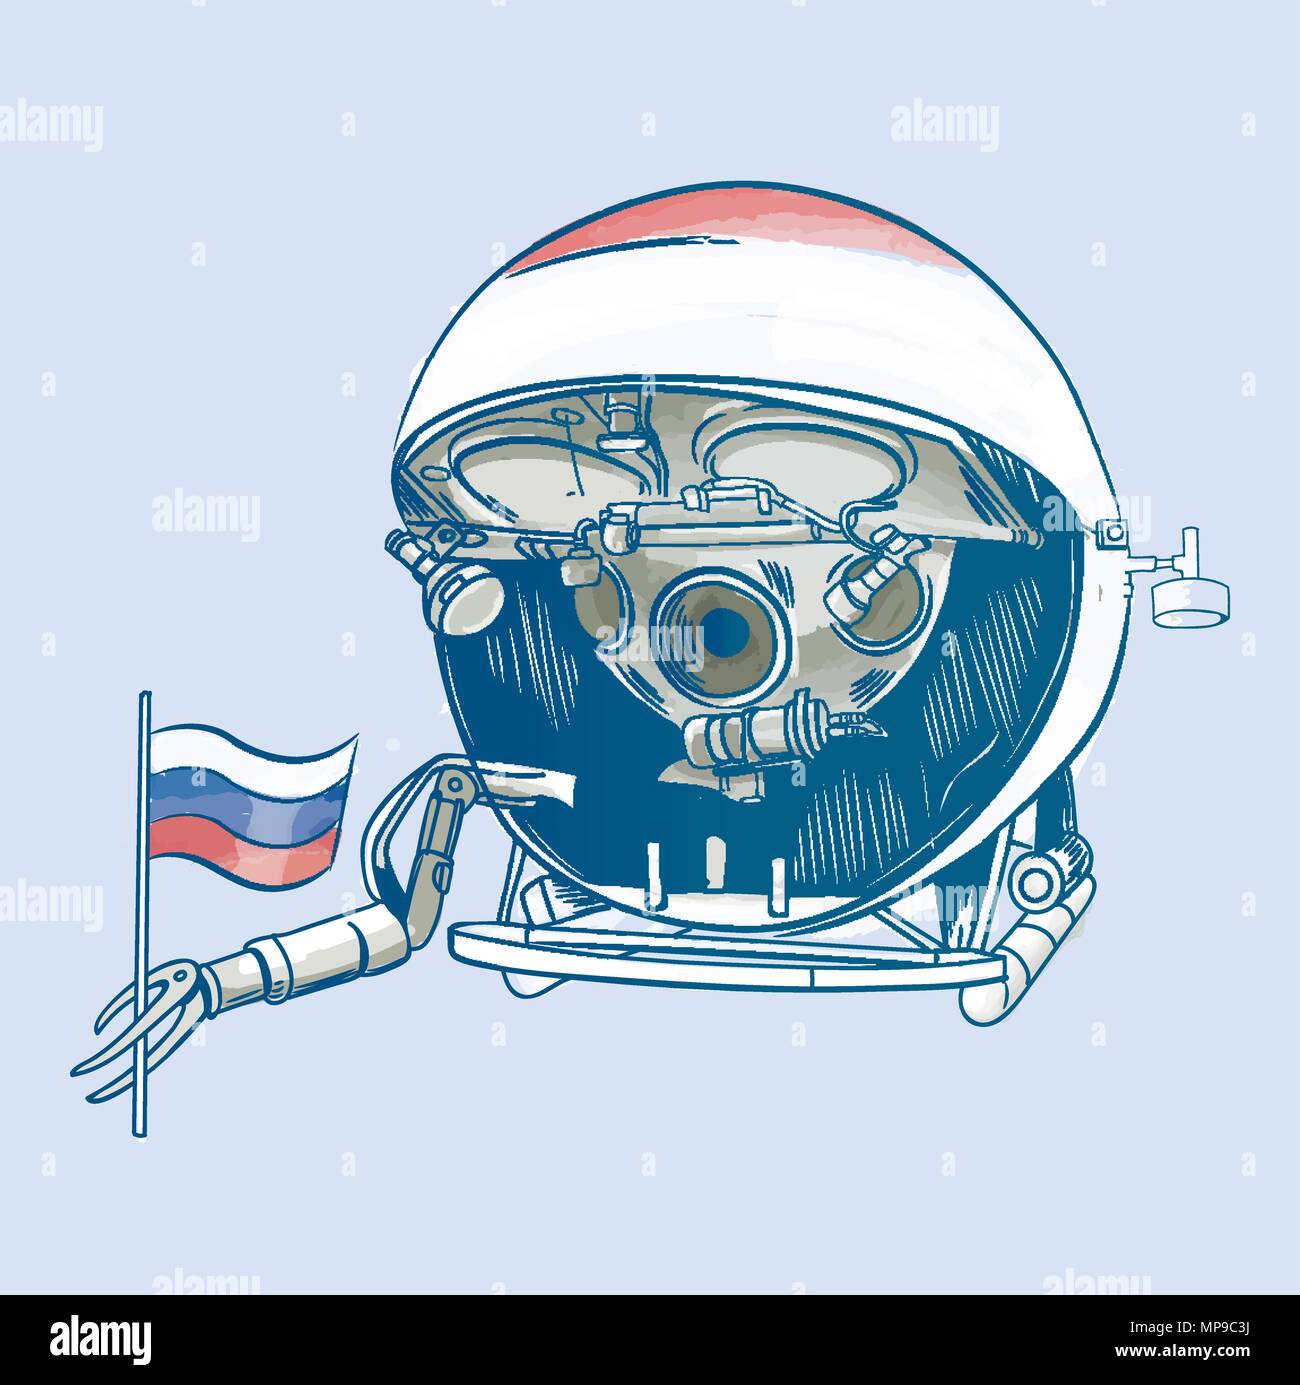 Vektor Wasser Farbe Abbildung eines Bathyscaph in der Arktis setzt die Russische Fahne Stock Vektor